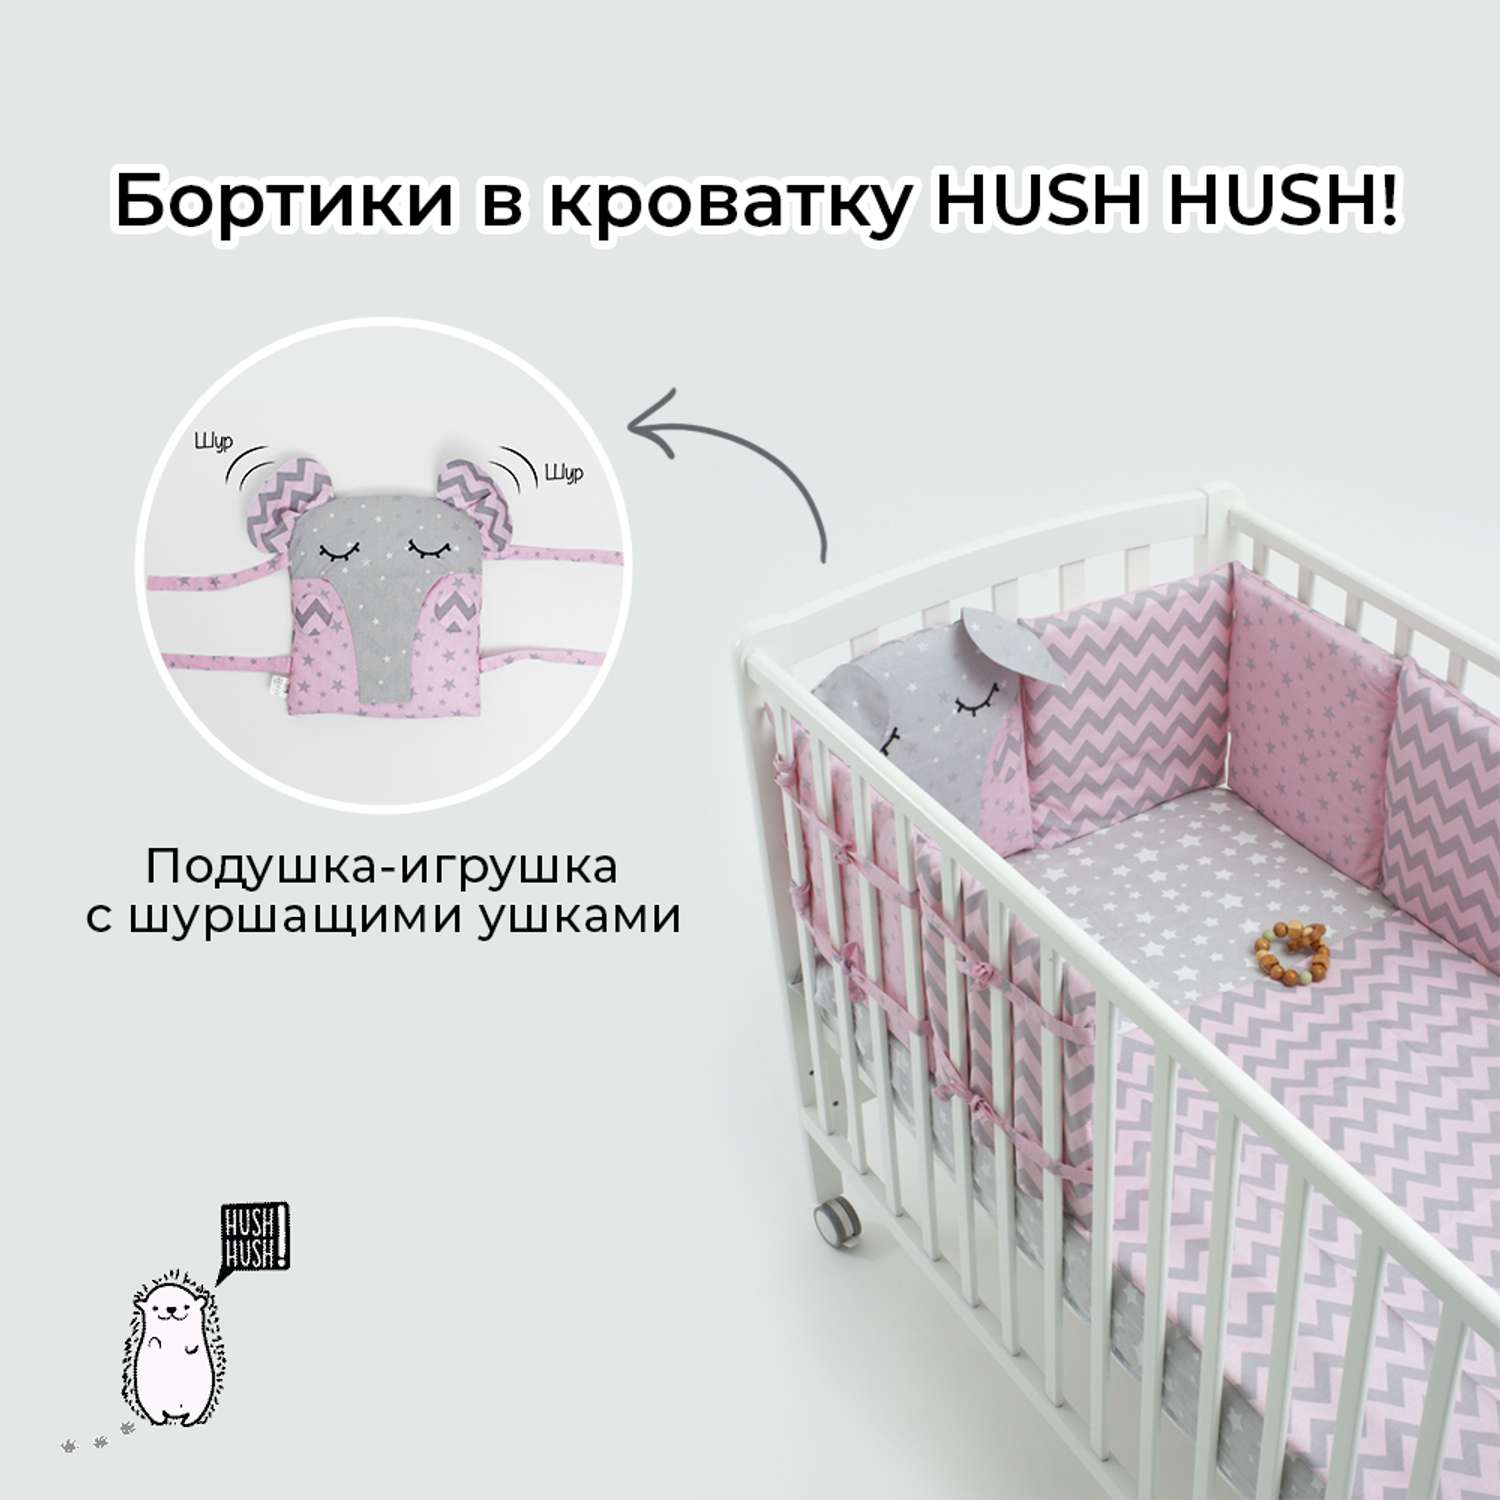 Бортики в кроватку Hush Hush! для новорожденных с шуршащими ушками Сонный слоник Pink 5111 - фото 3